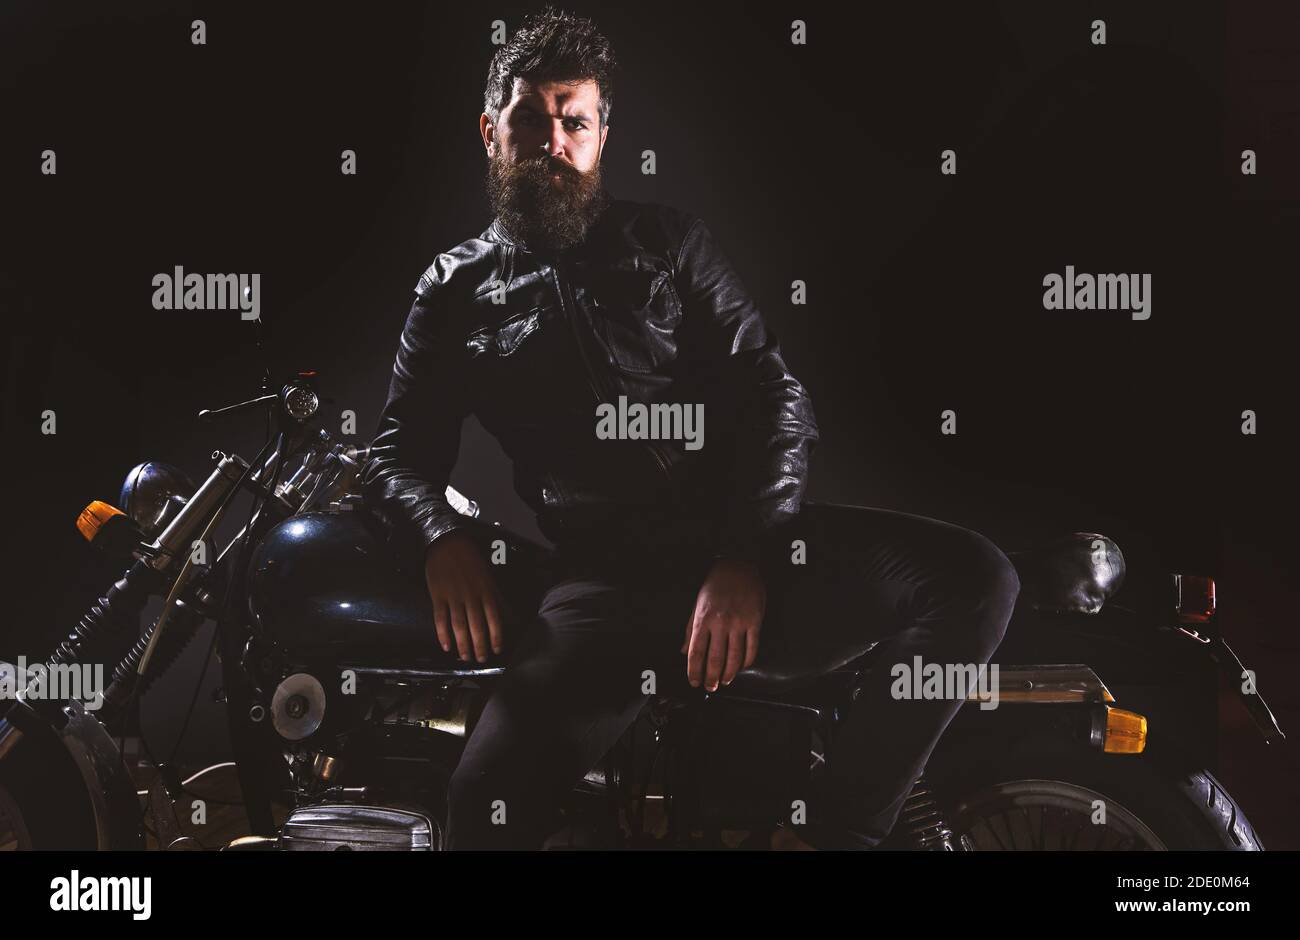 Macho, motard brutal dans un support de veste en cuir près de la moto la  nuit, espace de copie. Concept de culture du motard. Homme avec barbe,  motard dans la veste en